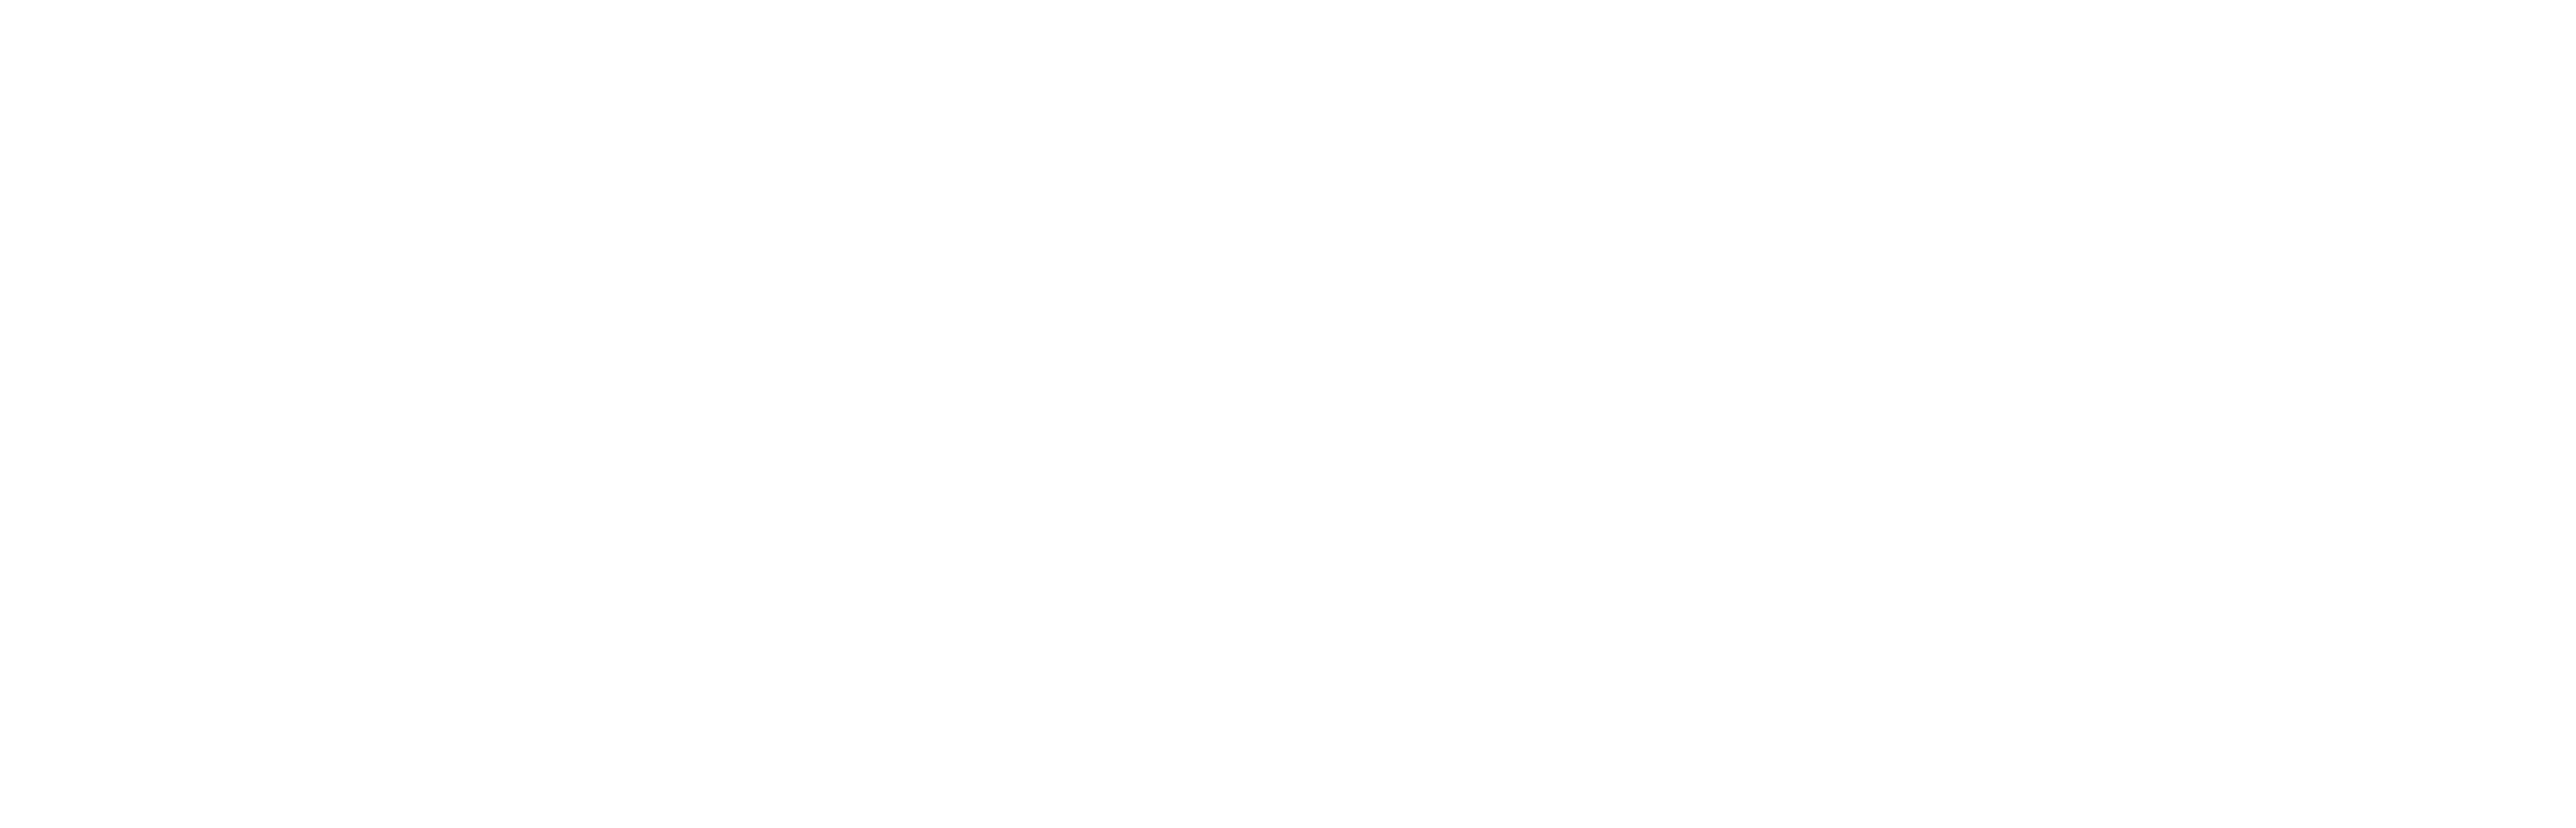 Joe Pickett logo